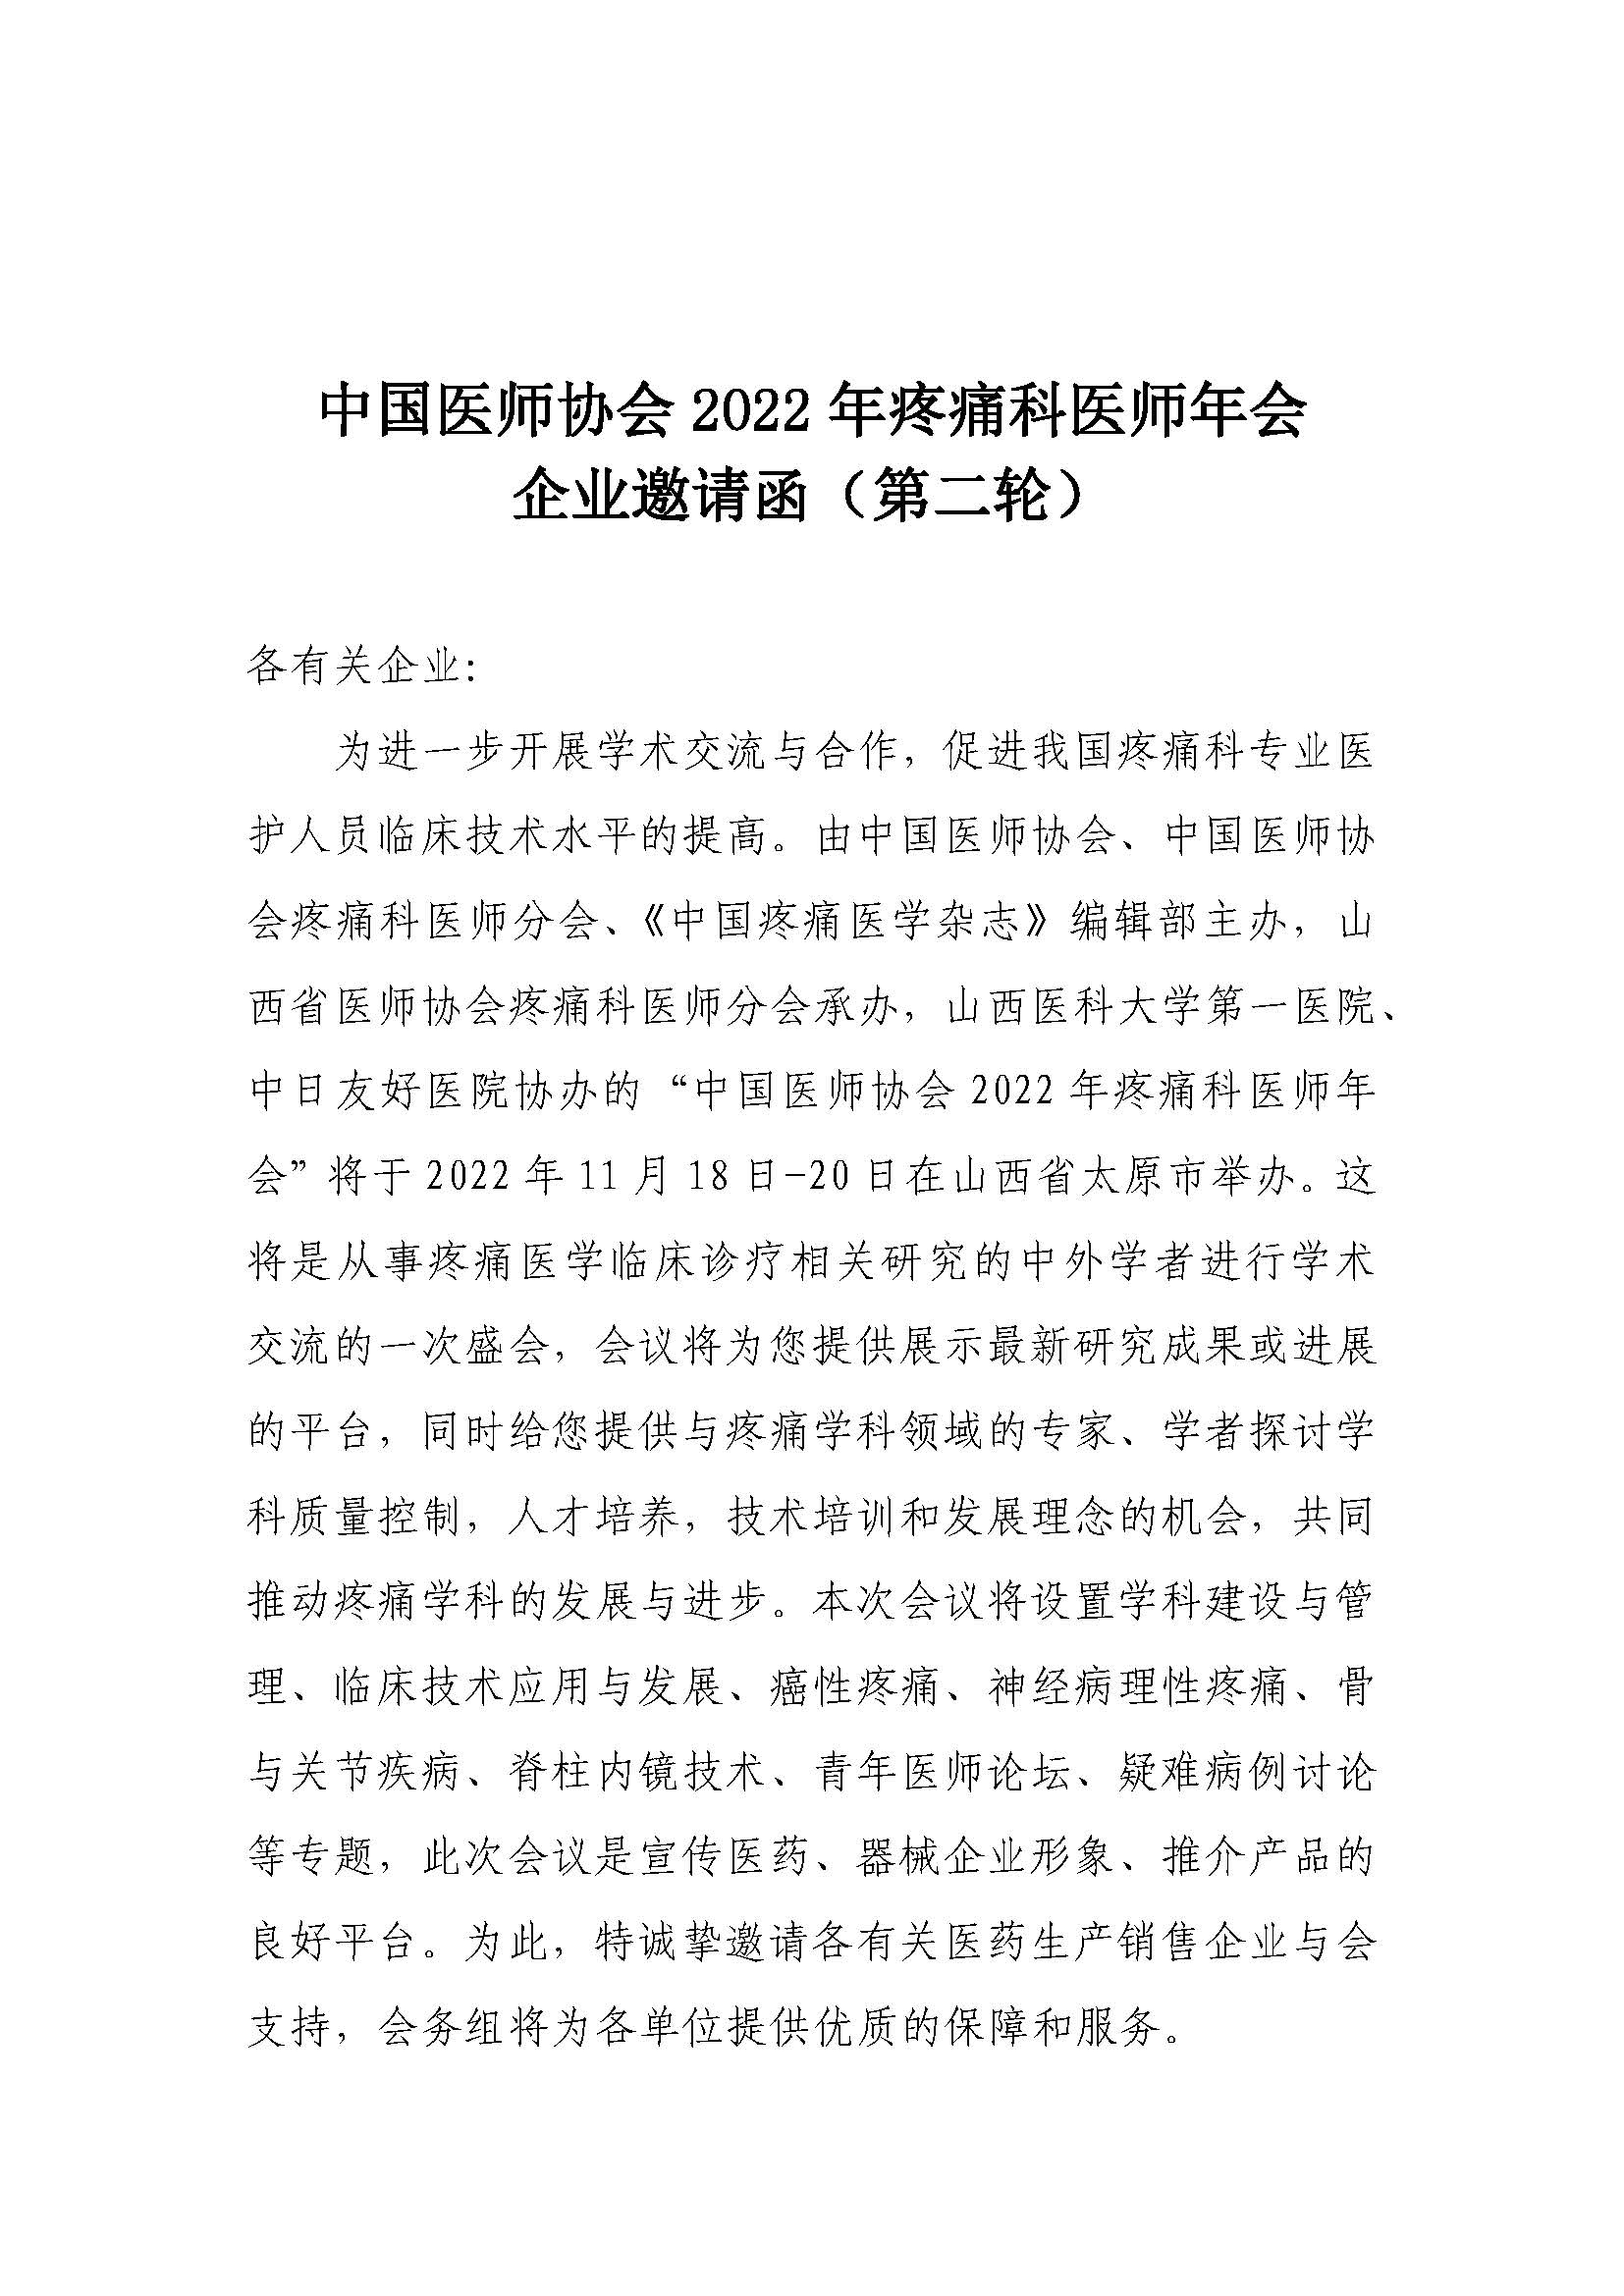 1_3-企业邀请函-中国医师协会2022年疼痛科医师年会20220822_页面_1.jpg